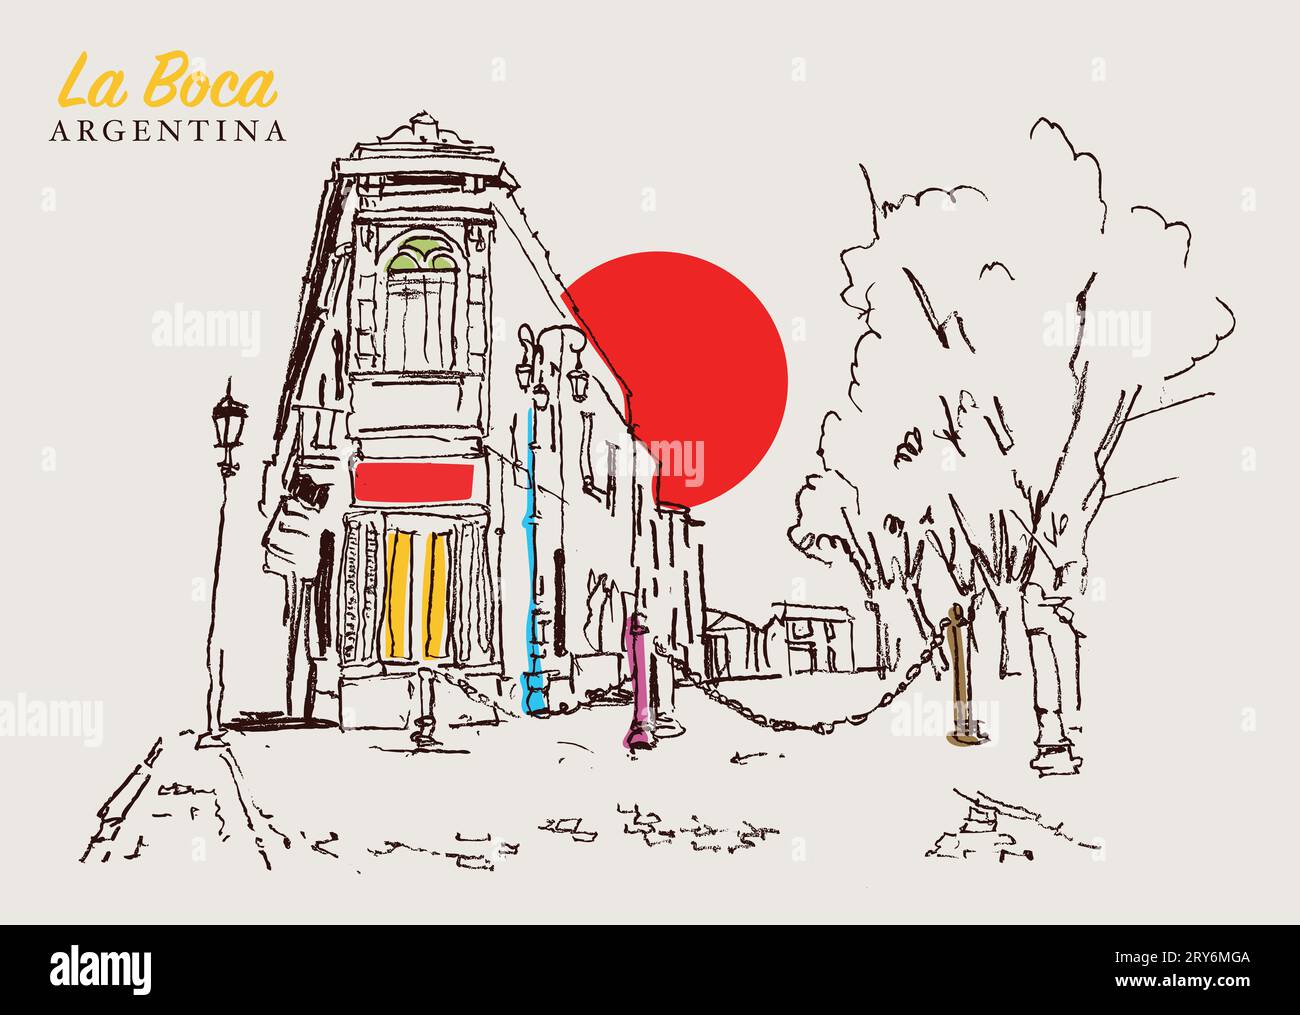 Illustration vectorielle dessinée à la main d'une rue traditionnelle à la Boca, Argentine. Banque D'Images